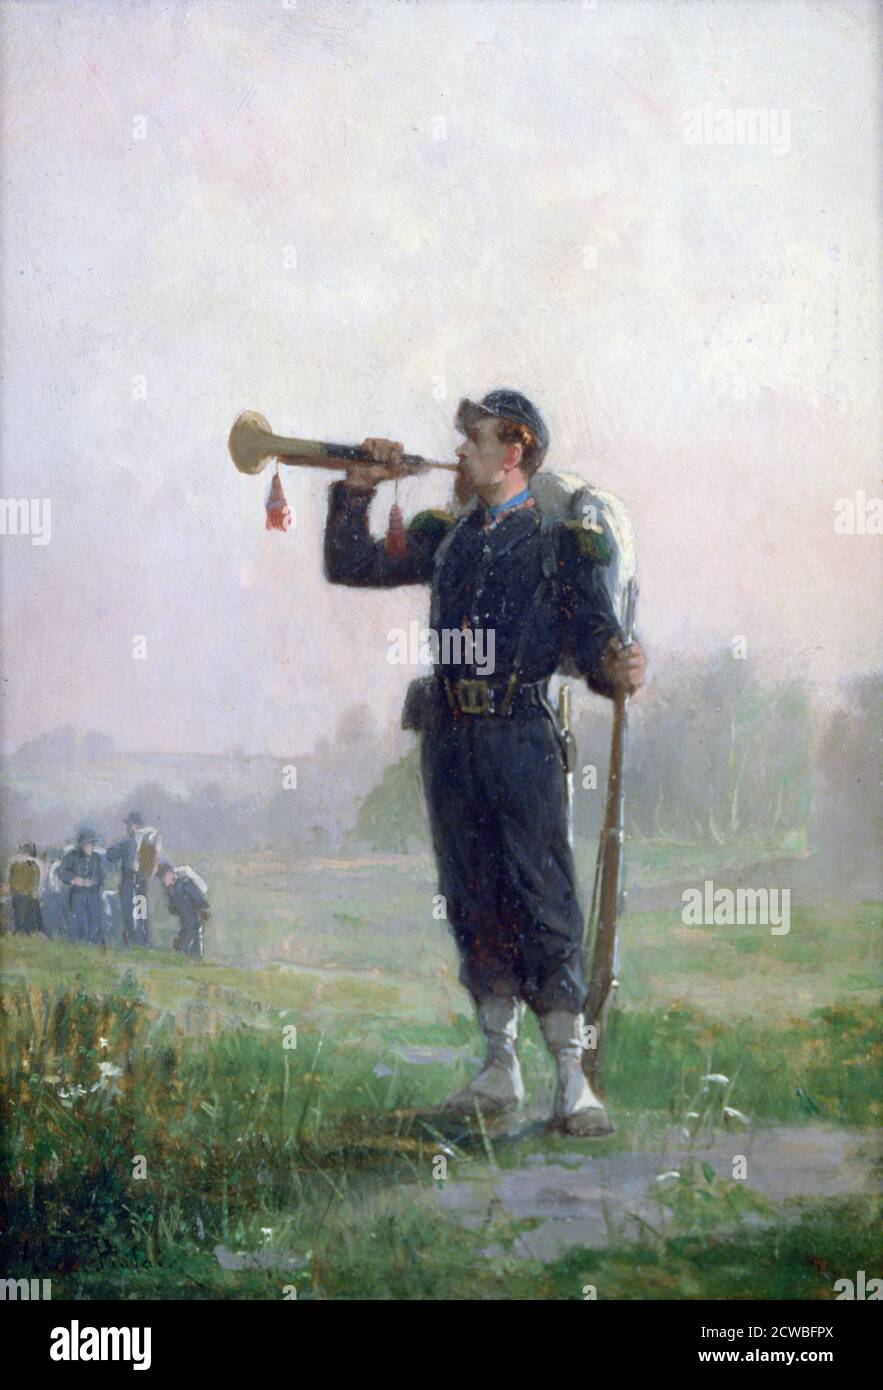 The Bugle', c1846-1890. Artista: Paul Alexandre Protais. Paul Alexandre Protais (1825-1890) è stato un artista francese di scene storiche, specialmente dipinti militari e di battaglia. Foto Stock